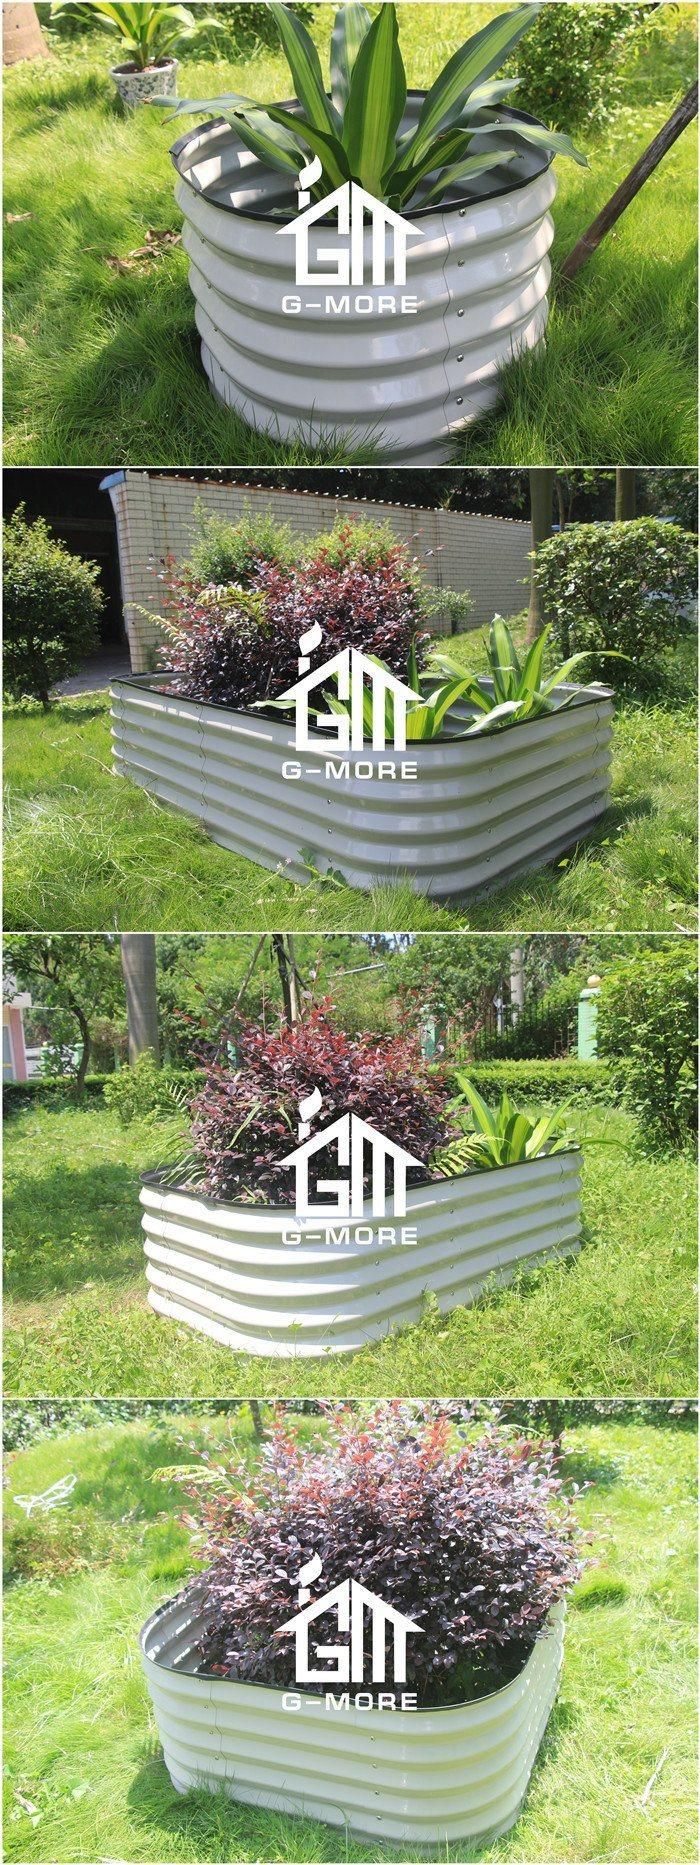 Garden Beds Galvanized Steel Raised Vegetable Garden Beds